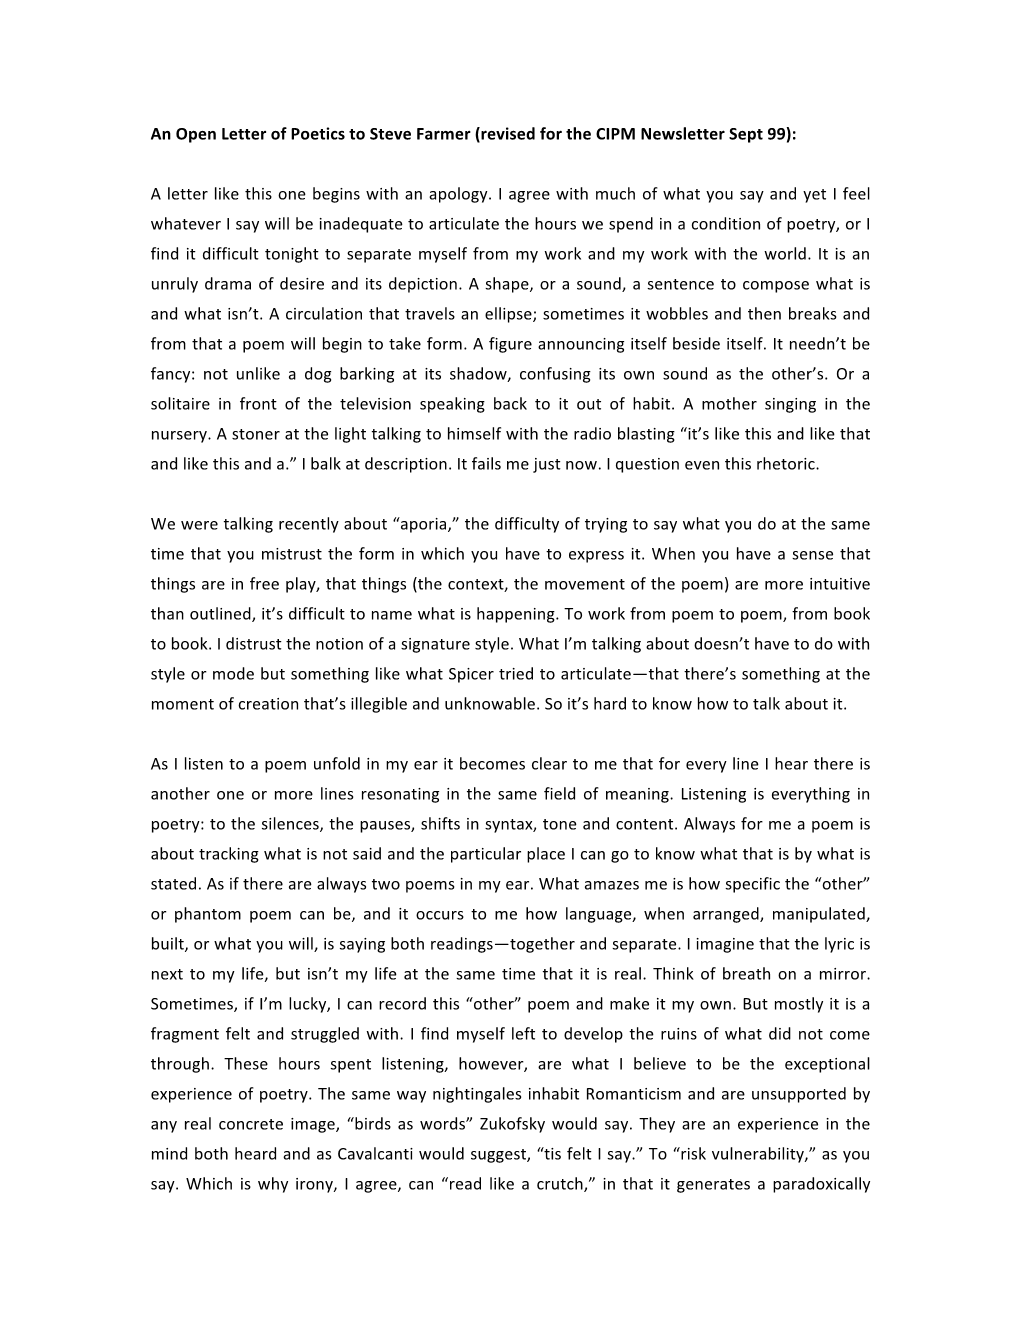 An Open Letter of Poetics to Steve Farmer (Revised for the CIPM Newsletter Sept 99)